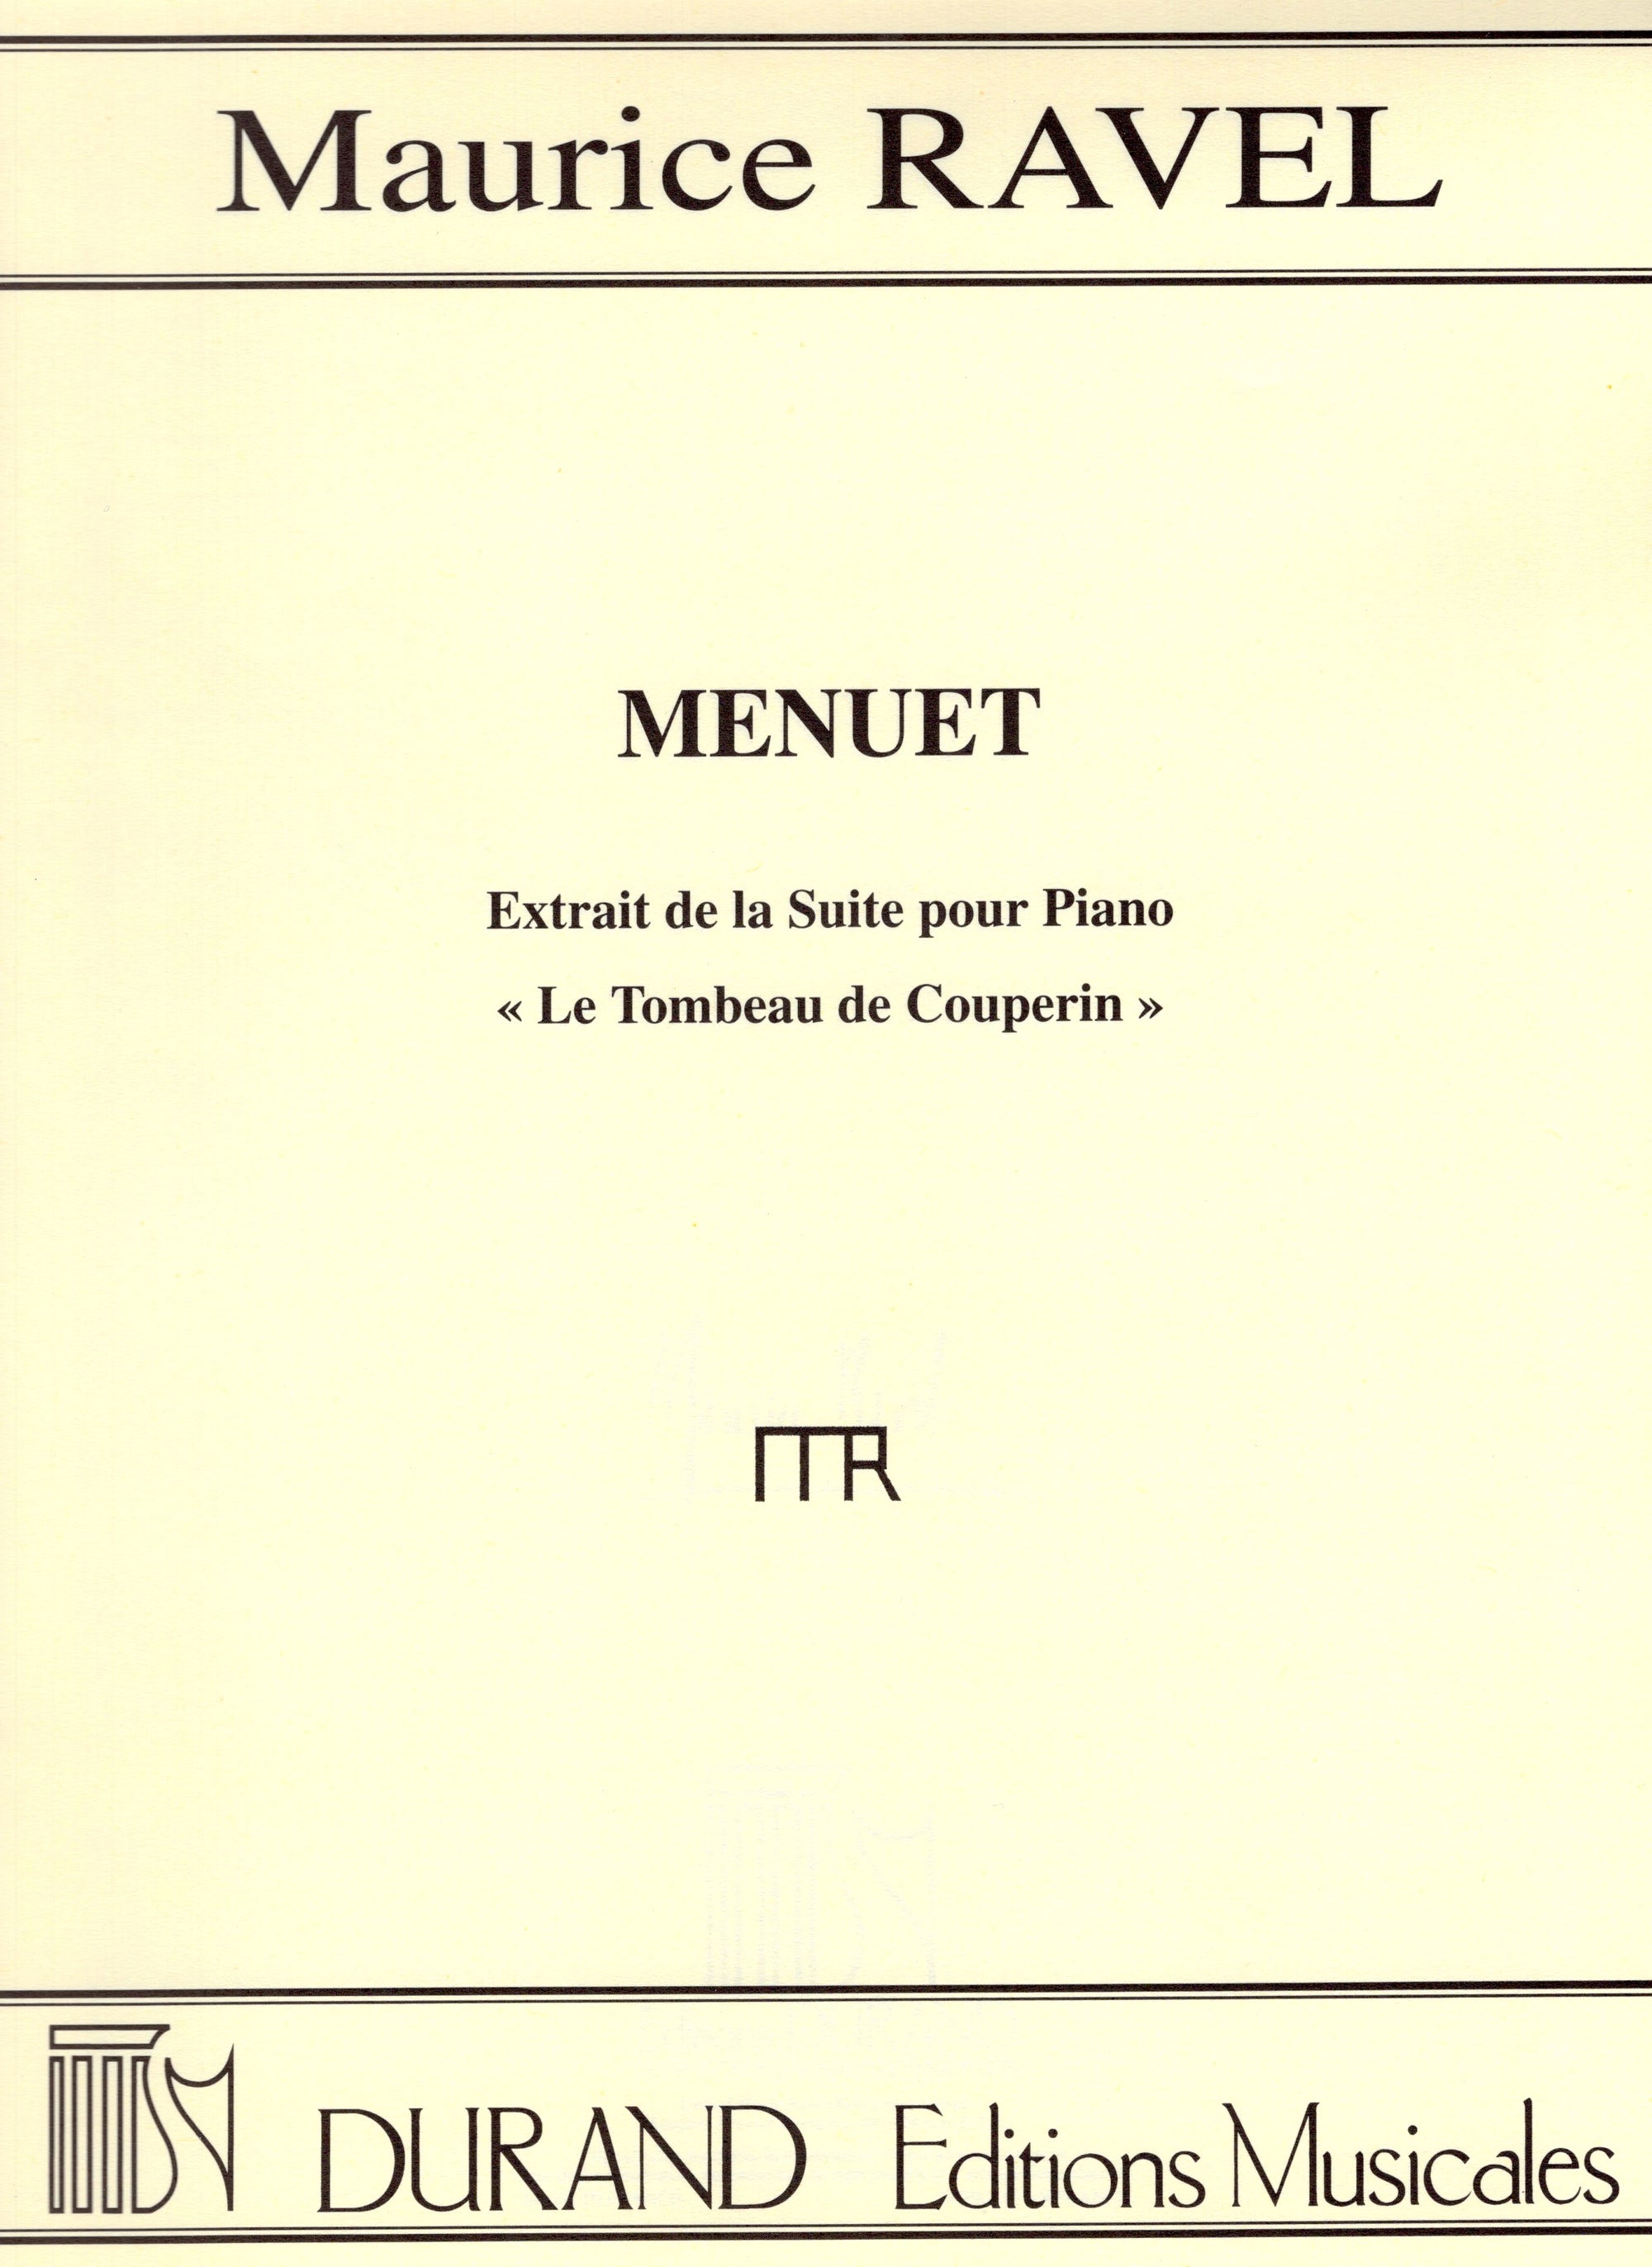 Ravel: Menuet (from Le Tombeau de Couperin)